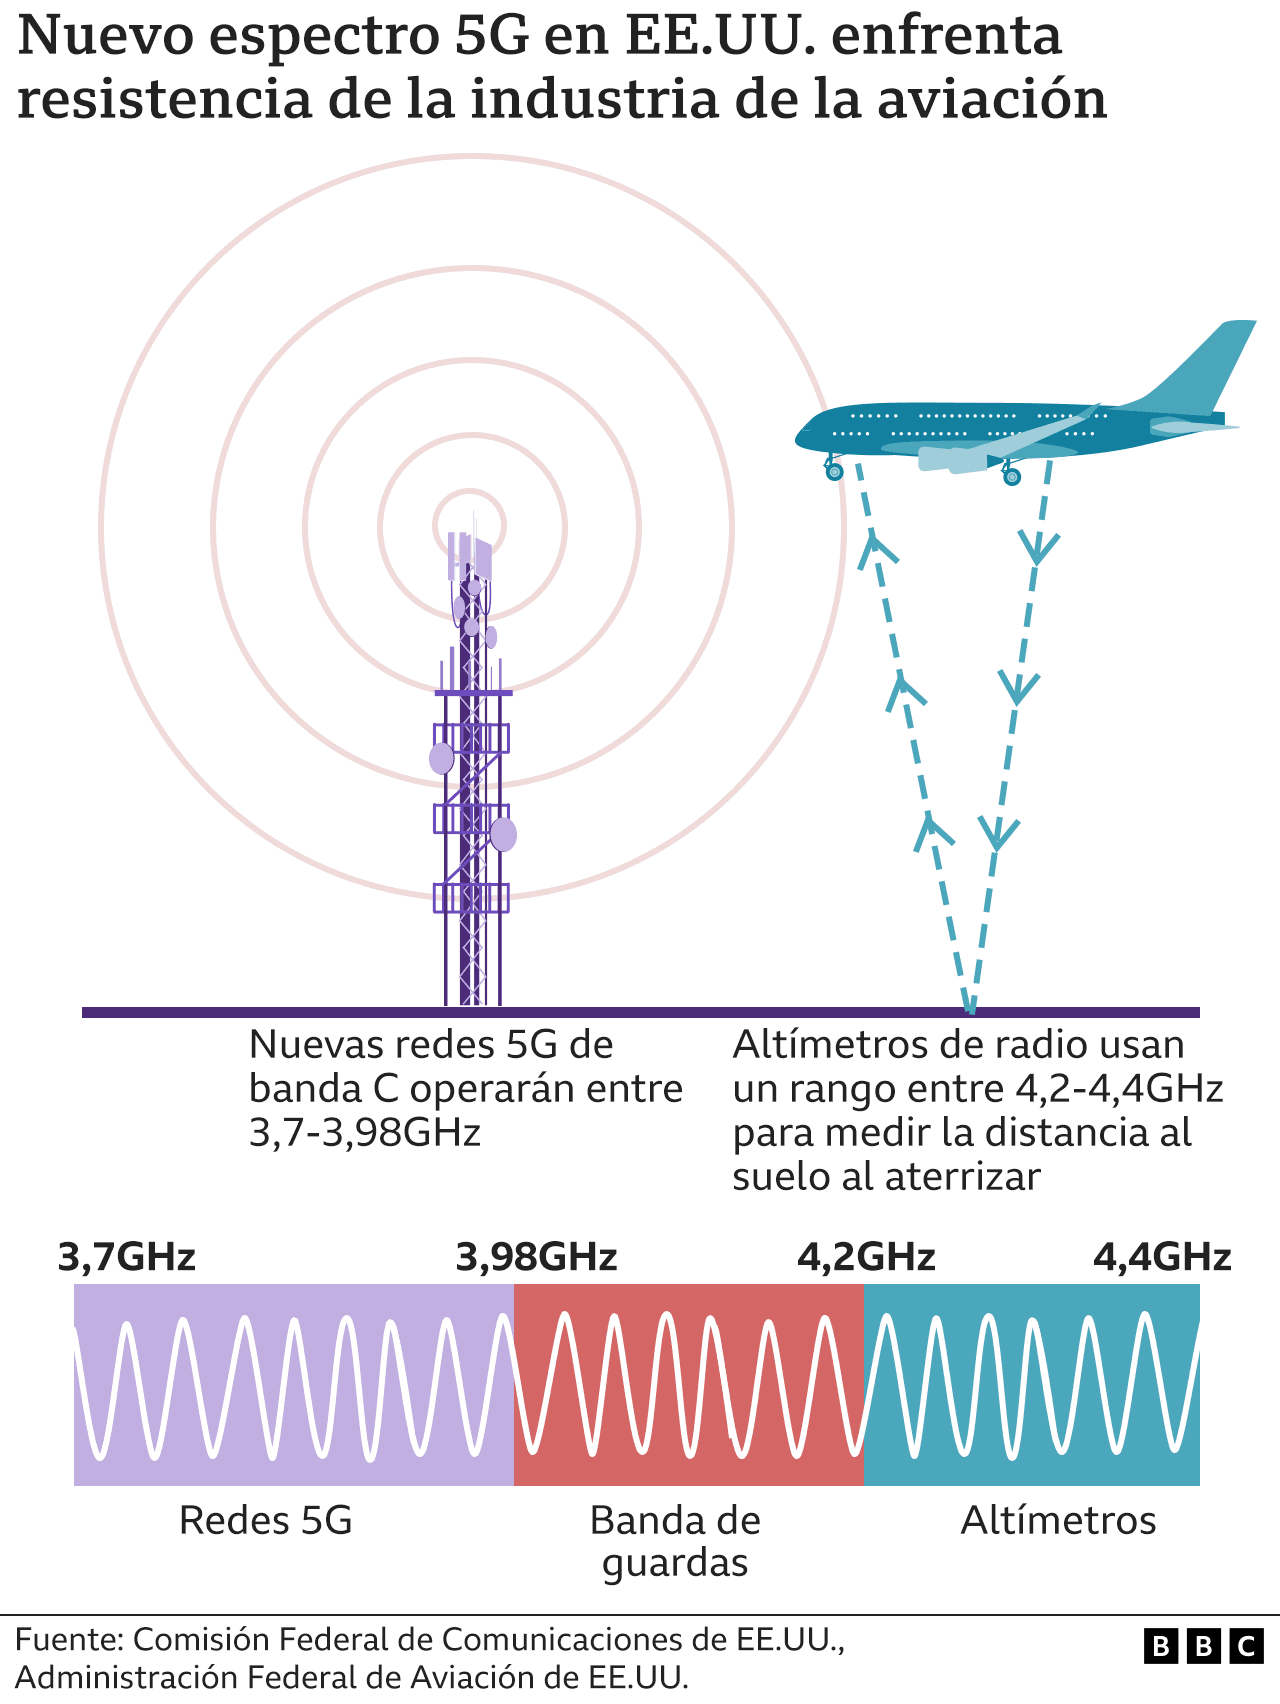 Ilustración explica cómo afectan las ondas de 5G a los aviones